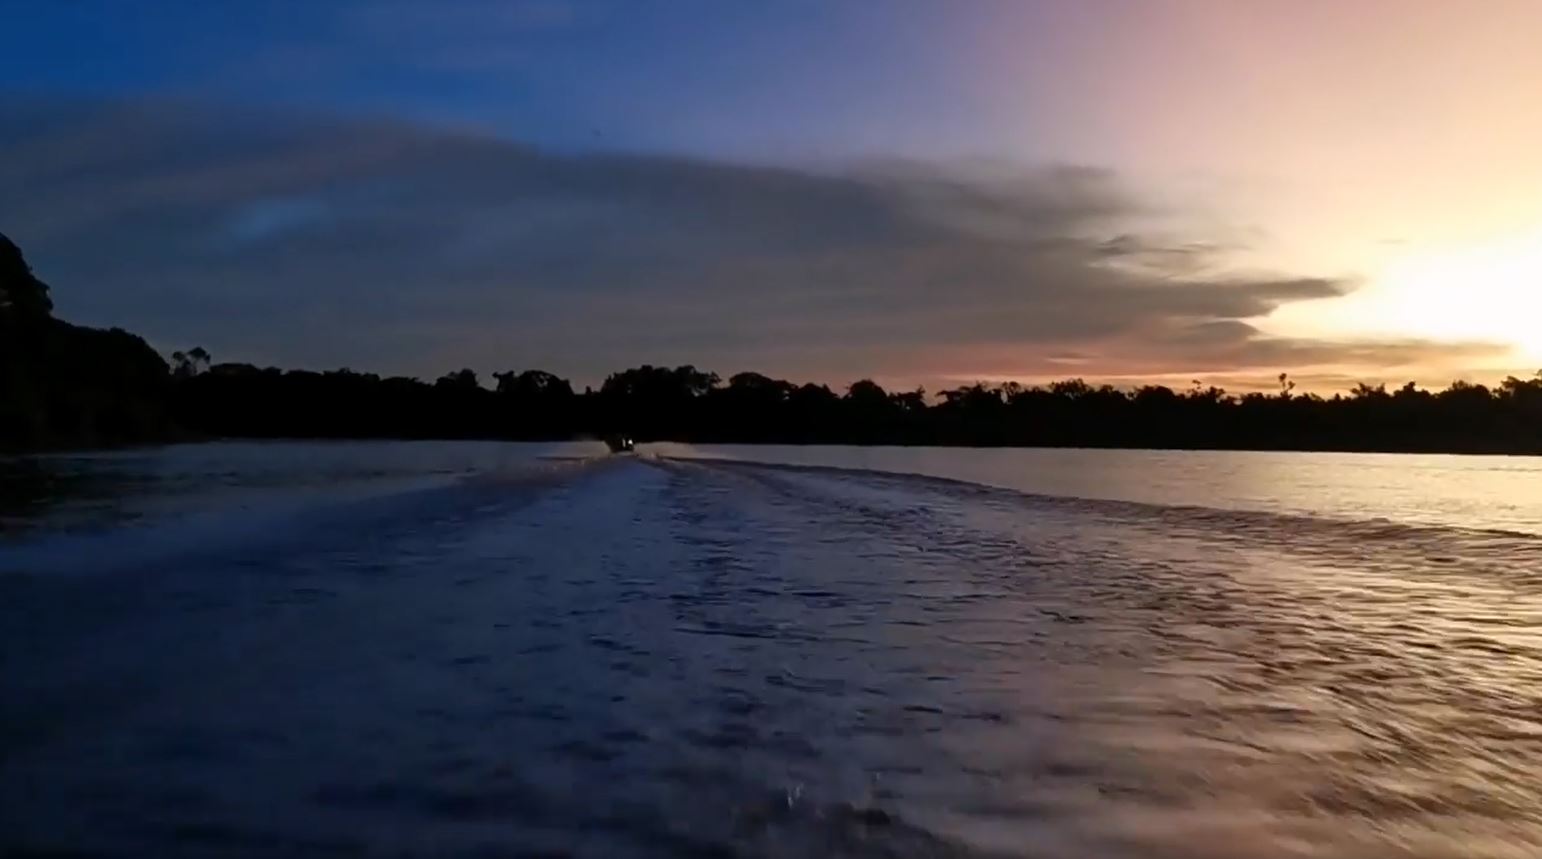 Fotoreise mit Benny Rebel Fotosafaris GmbH. Dies ist das letzte Video aus dem Bereich des Pantanals, wo wir Jaguare fotografieren.